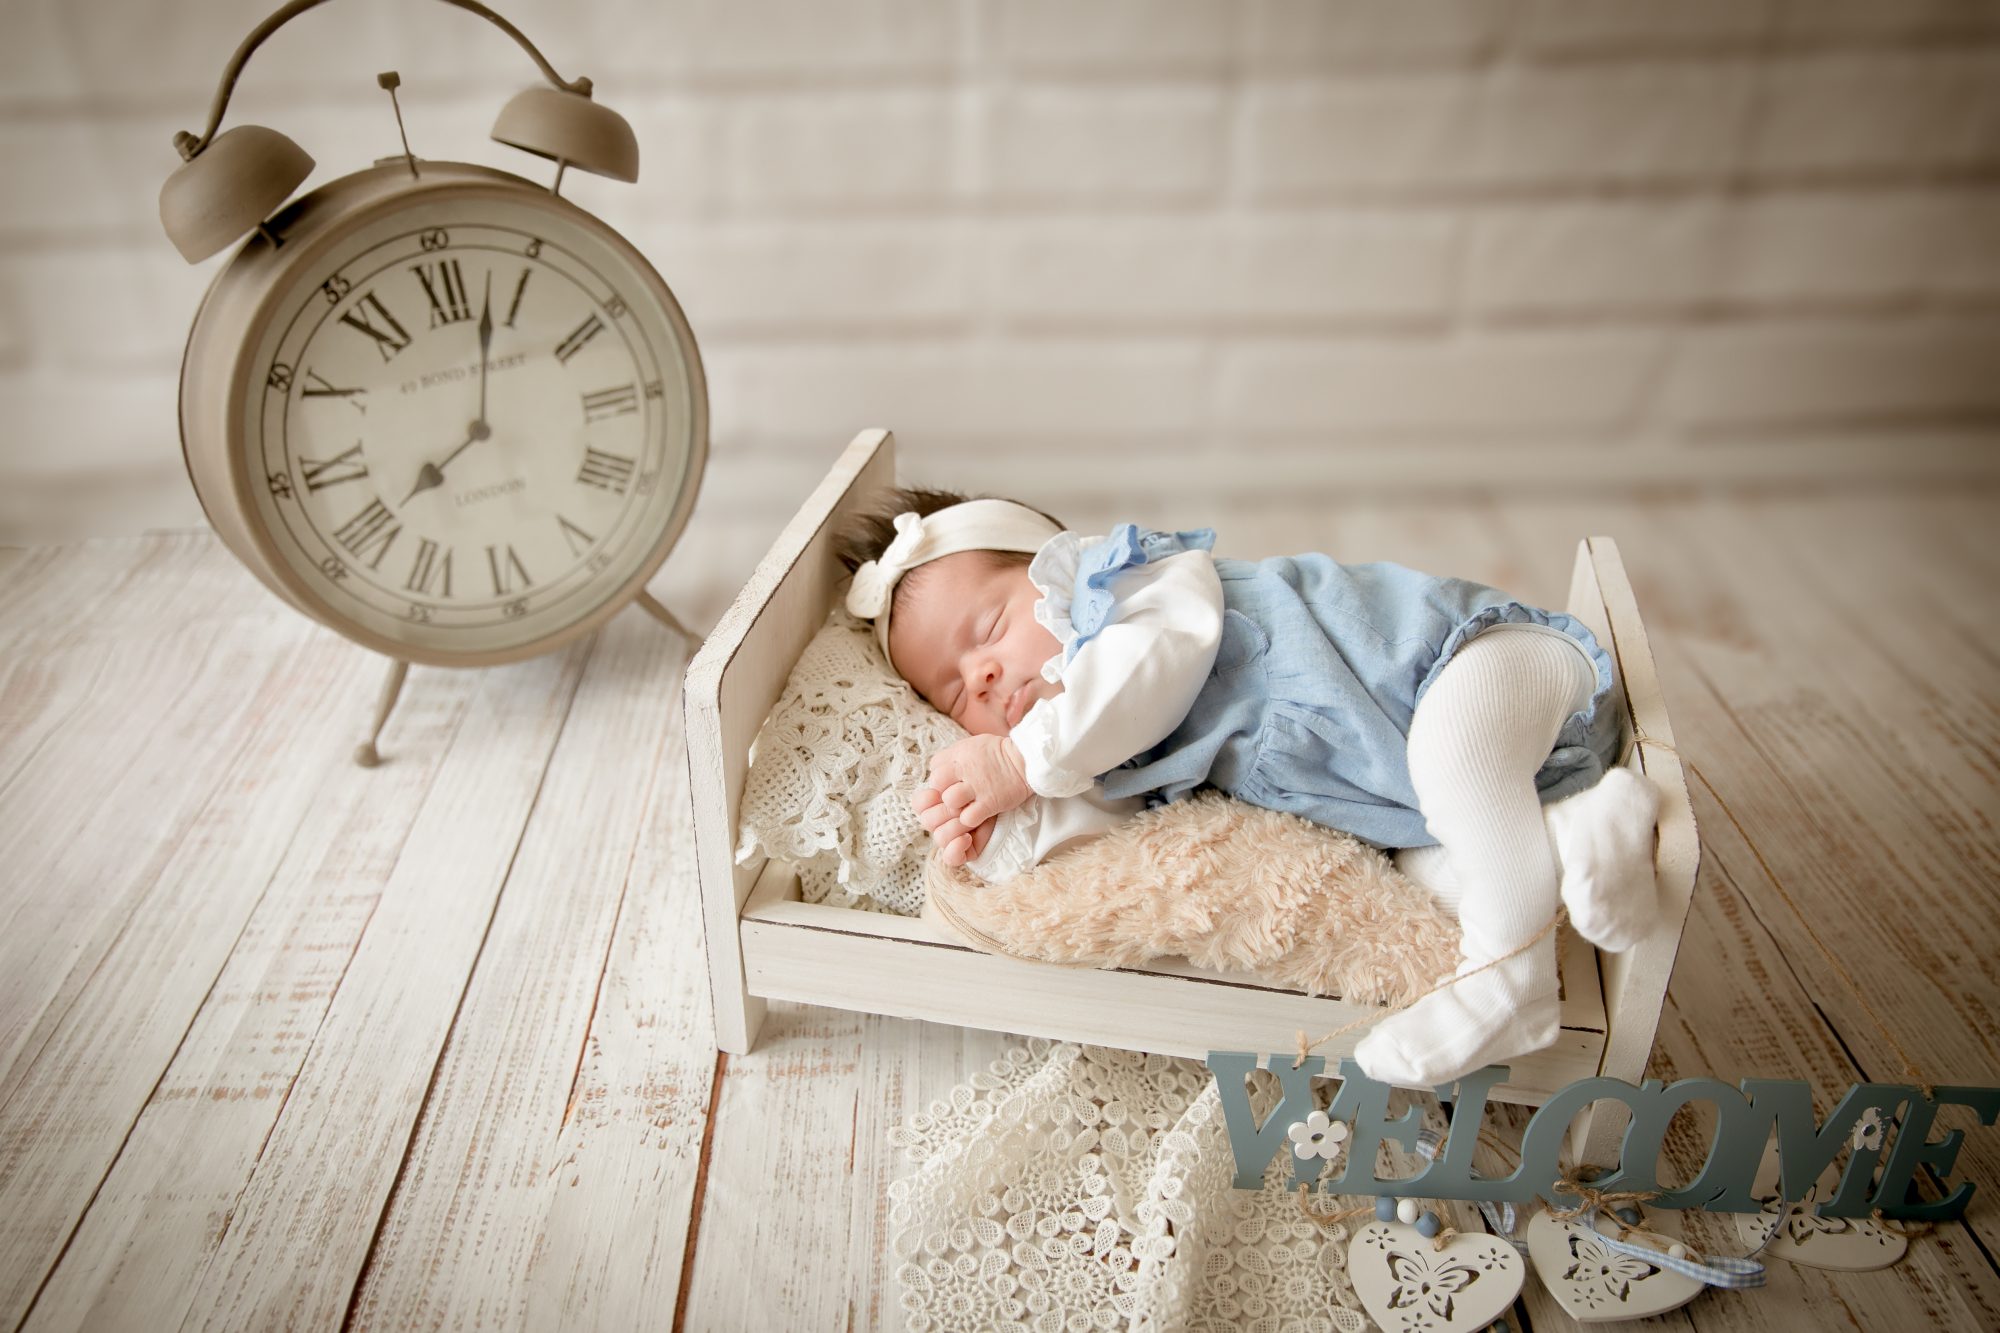 baby fotoshooting newborn fotostudio bilifotos.ch luzern baby foto zeigt wie baby im bett liegt